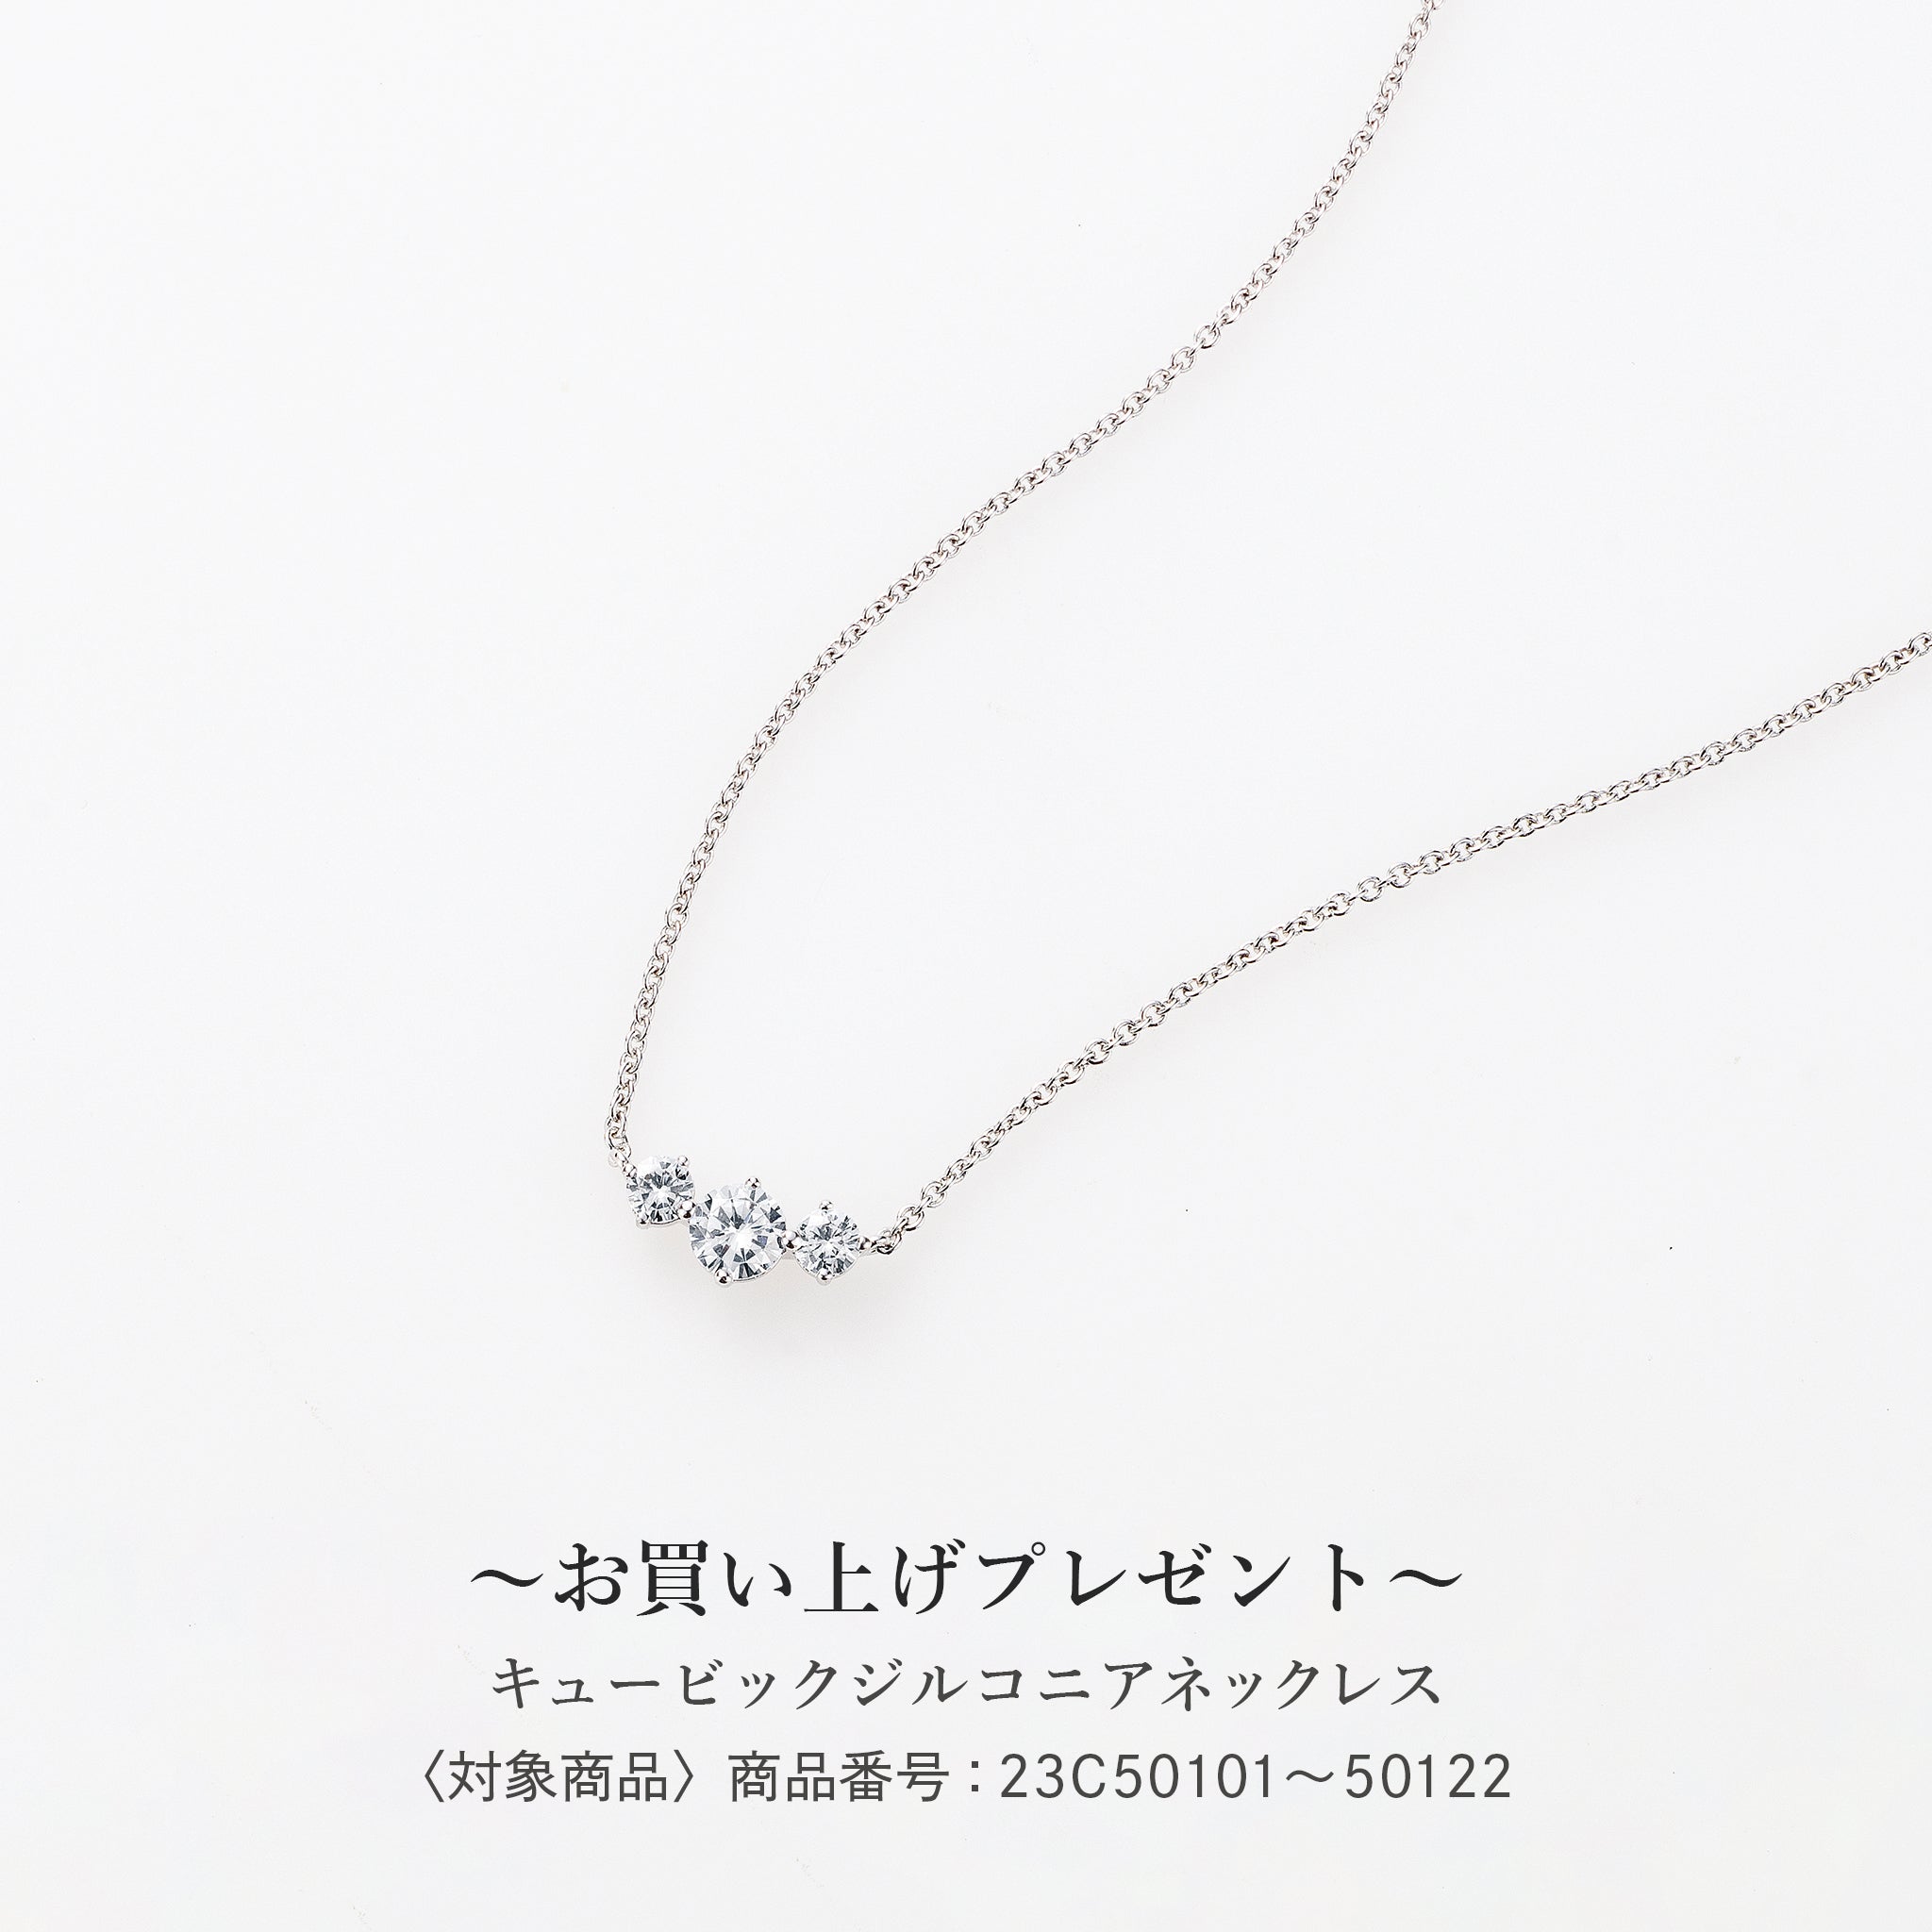 シェル/パール SVメガネチェーン兼ネックレス(淡水真珠/ロング/80cm)